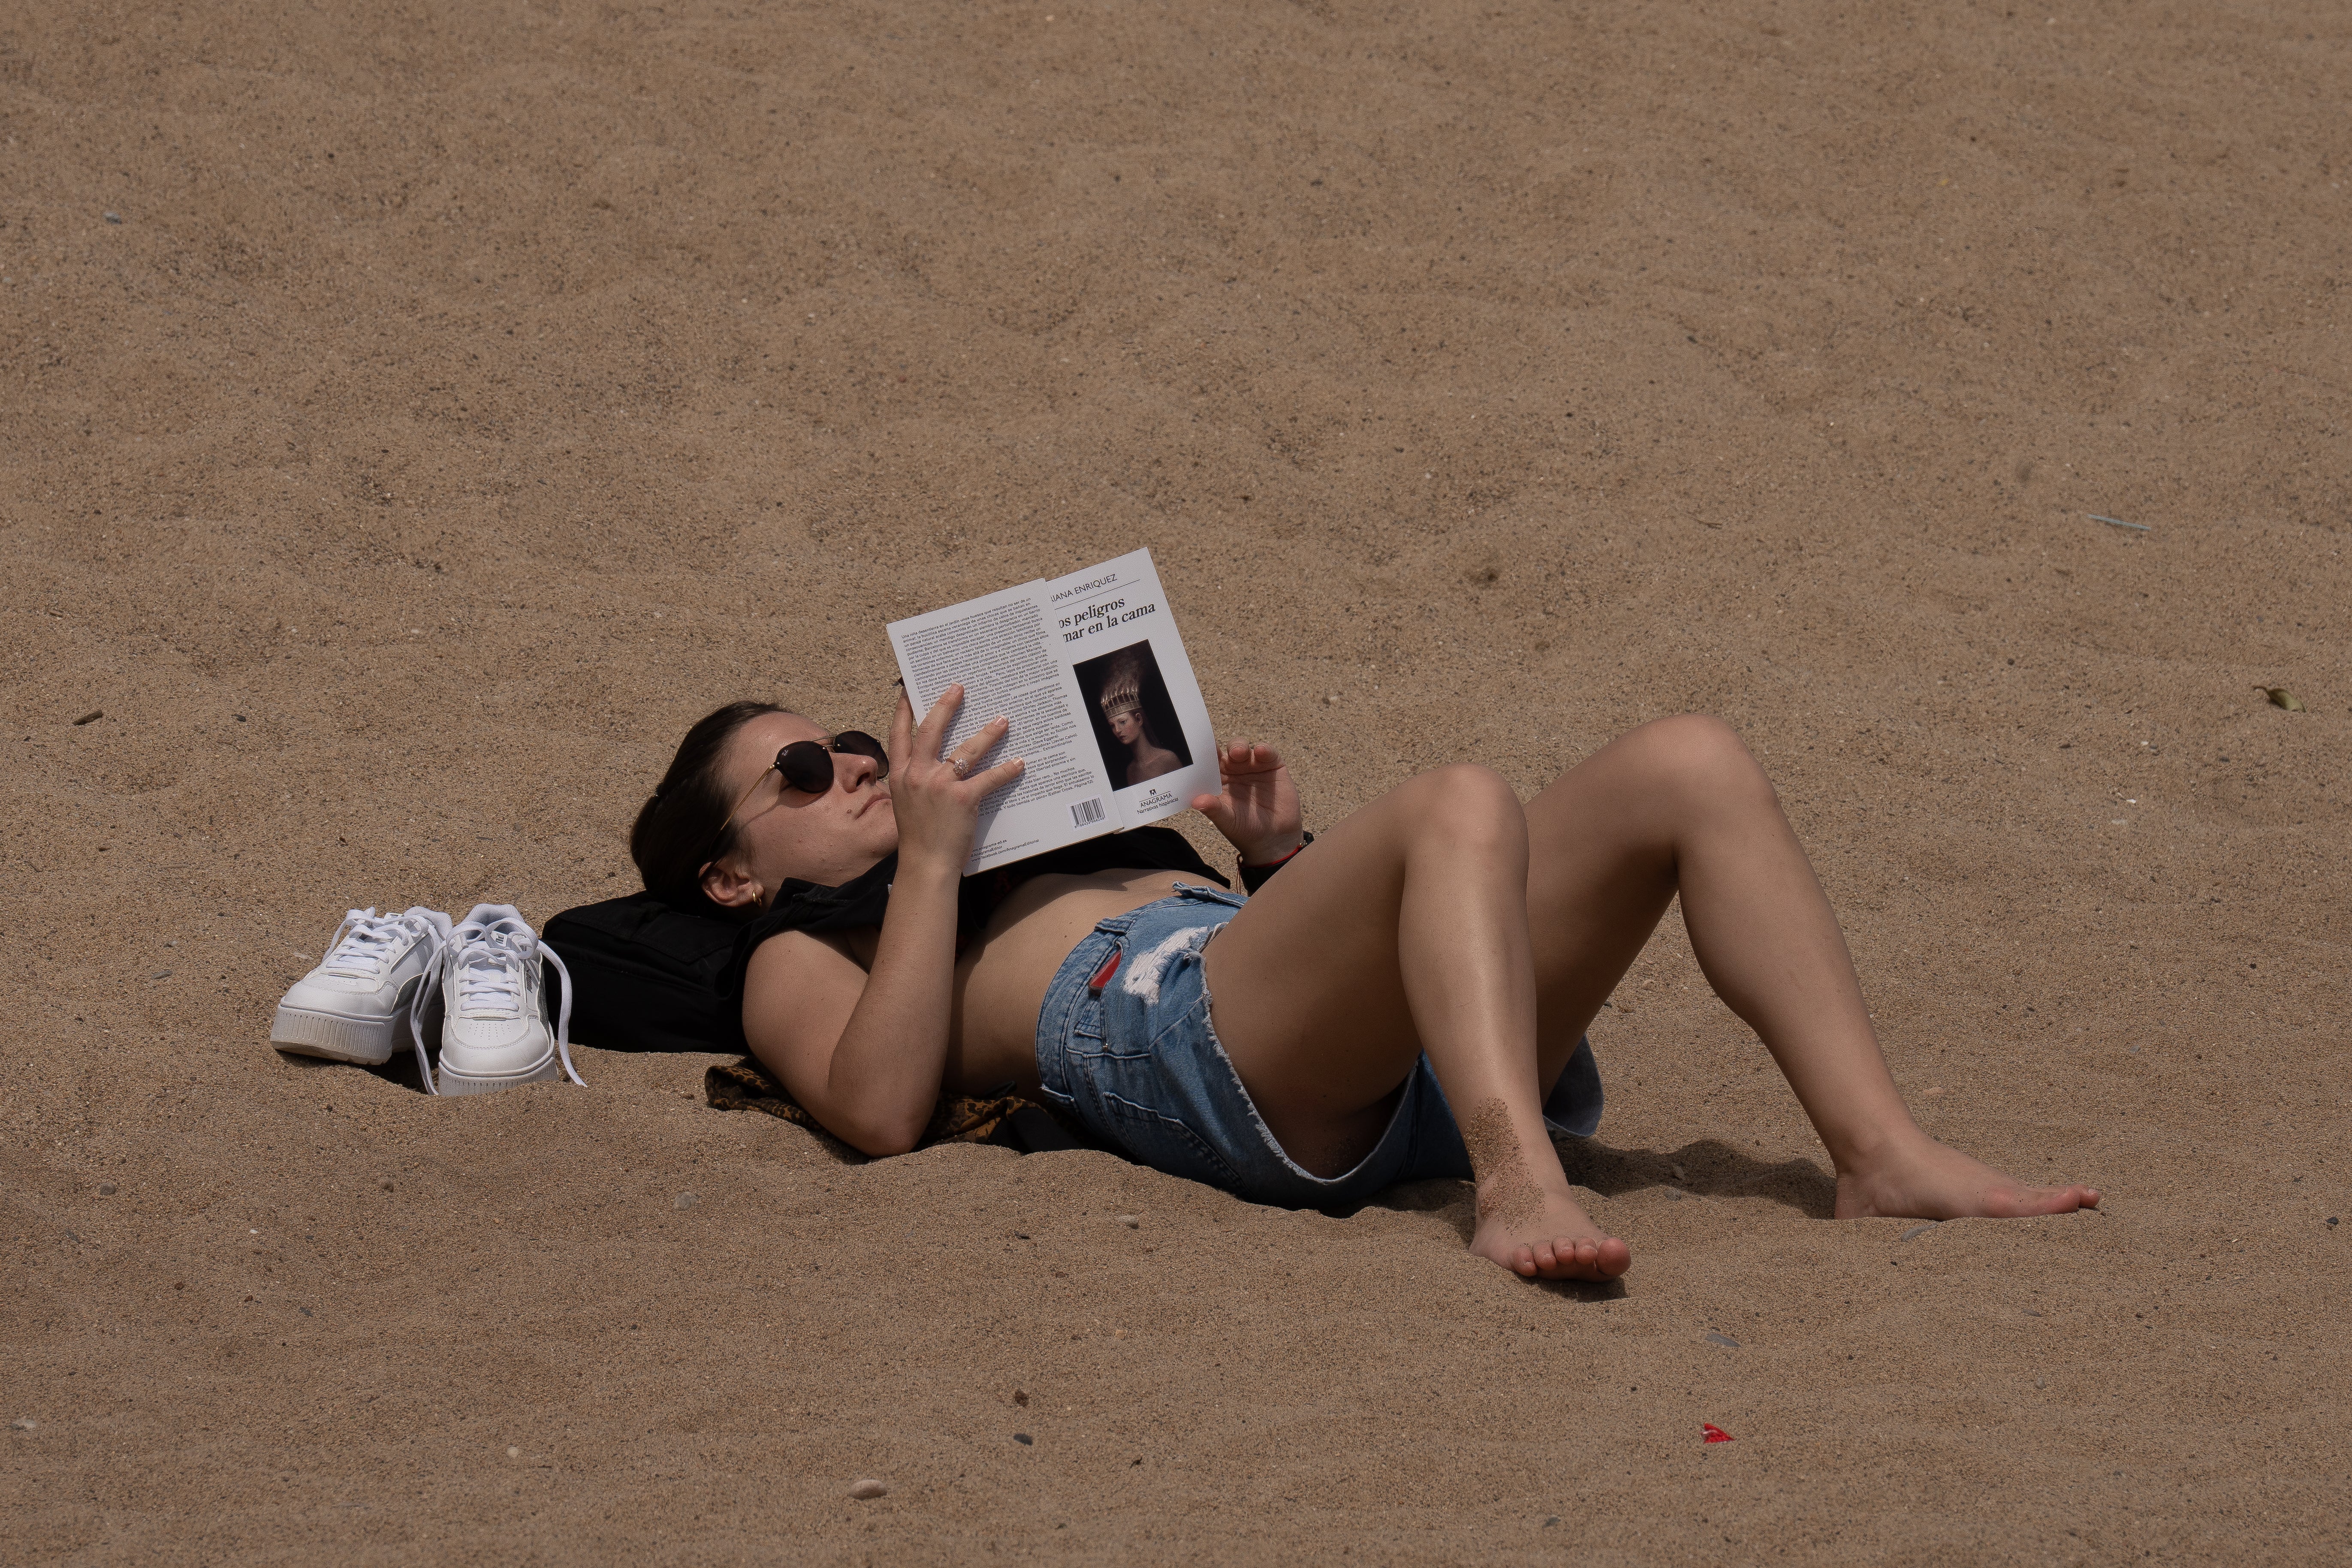 Se multiplican las webs que exhiben fotos de mujeres en topless en la playa hechas sin su consentimiento imagen